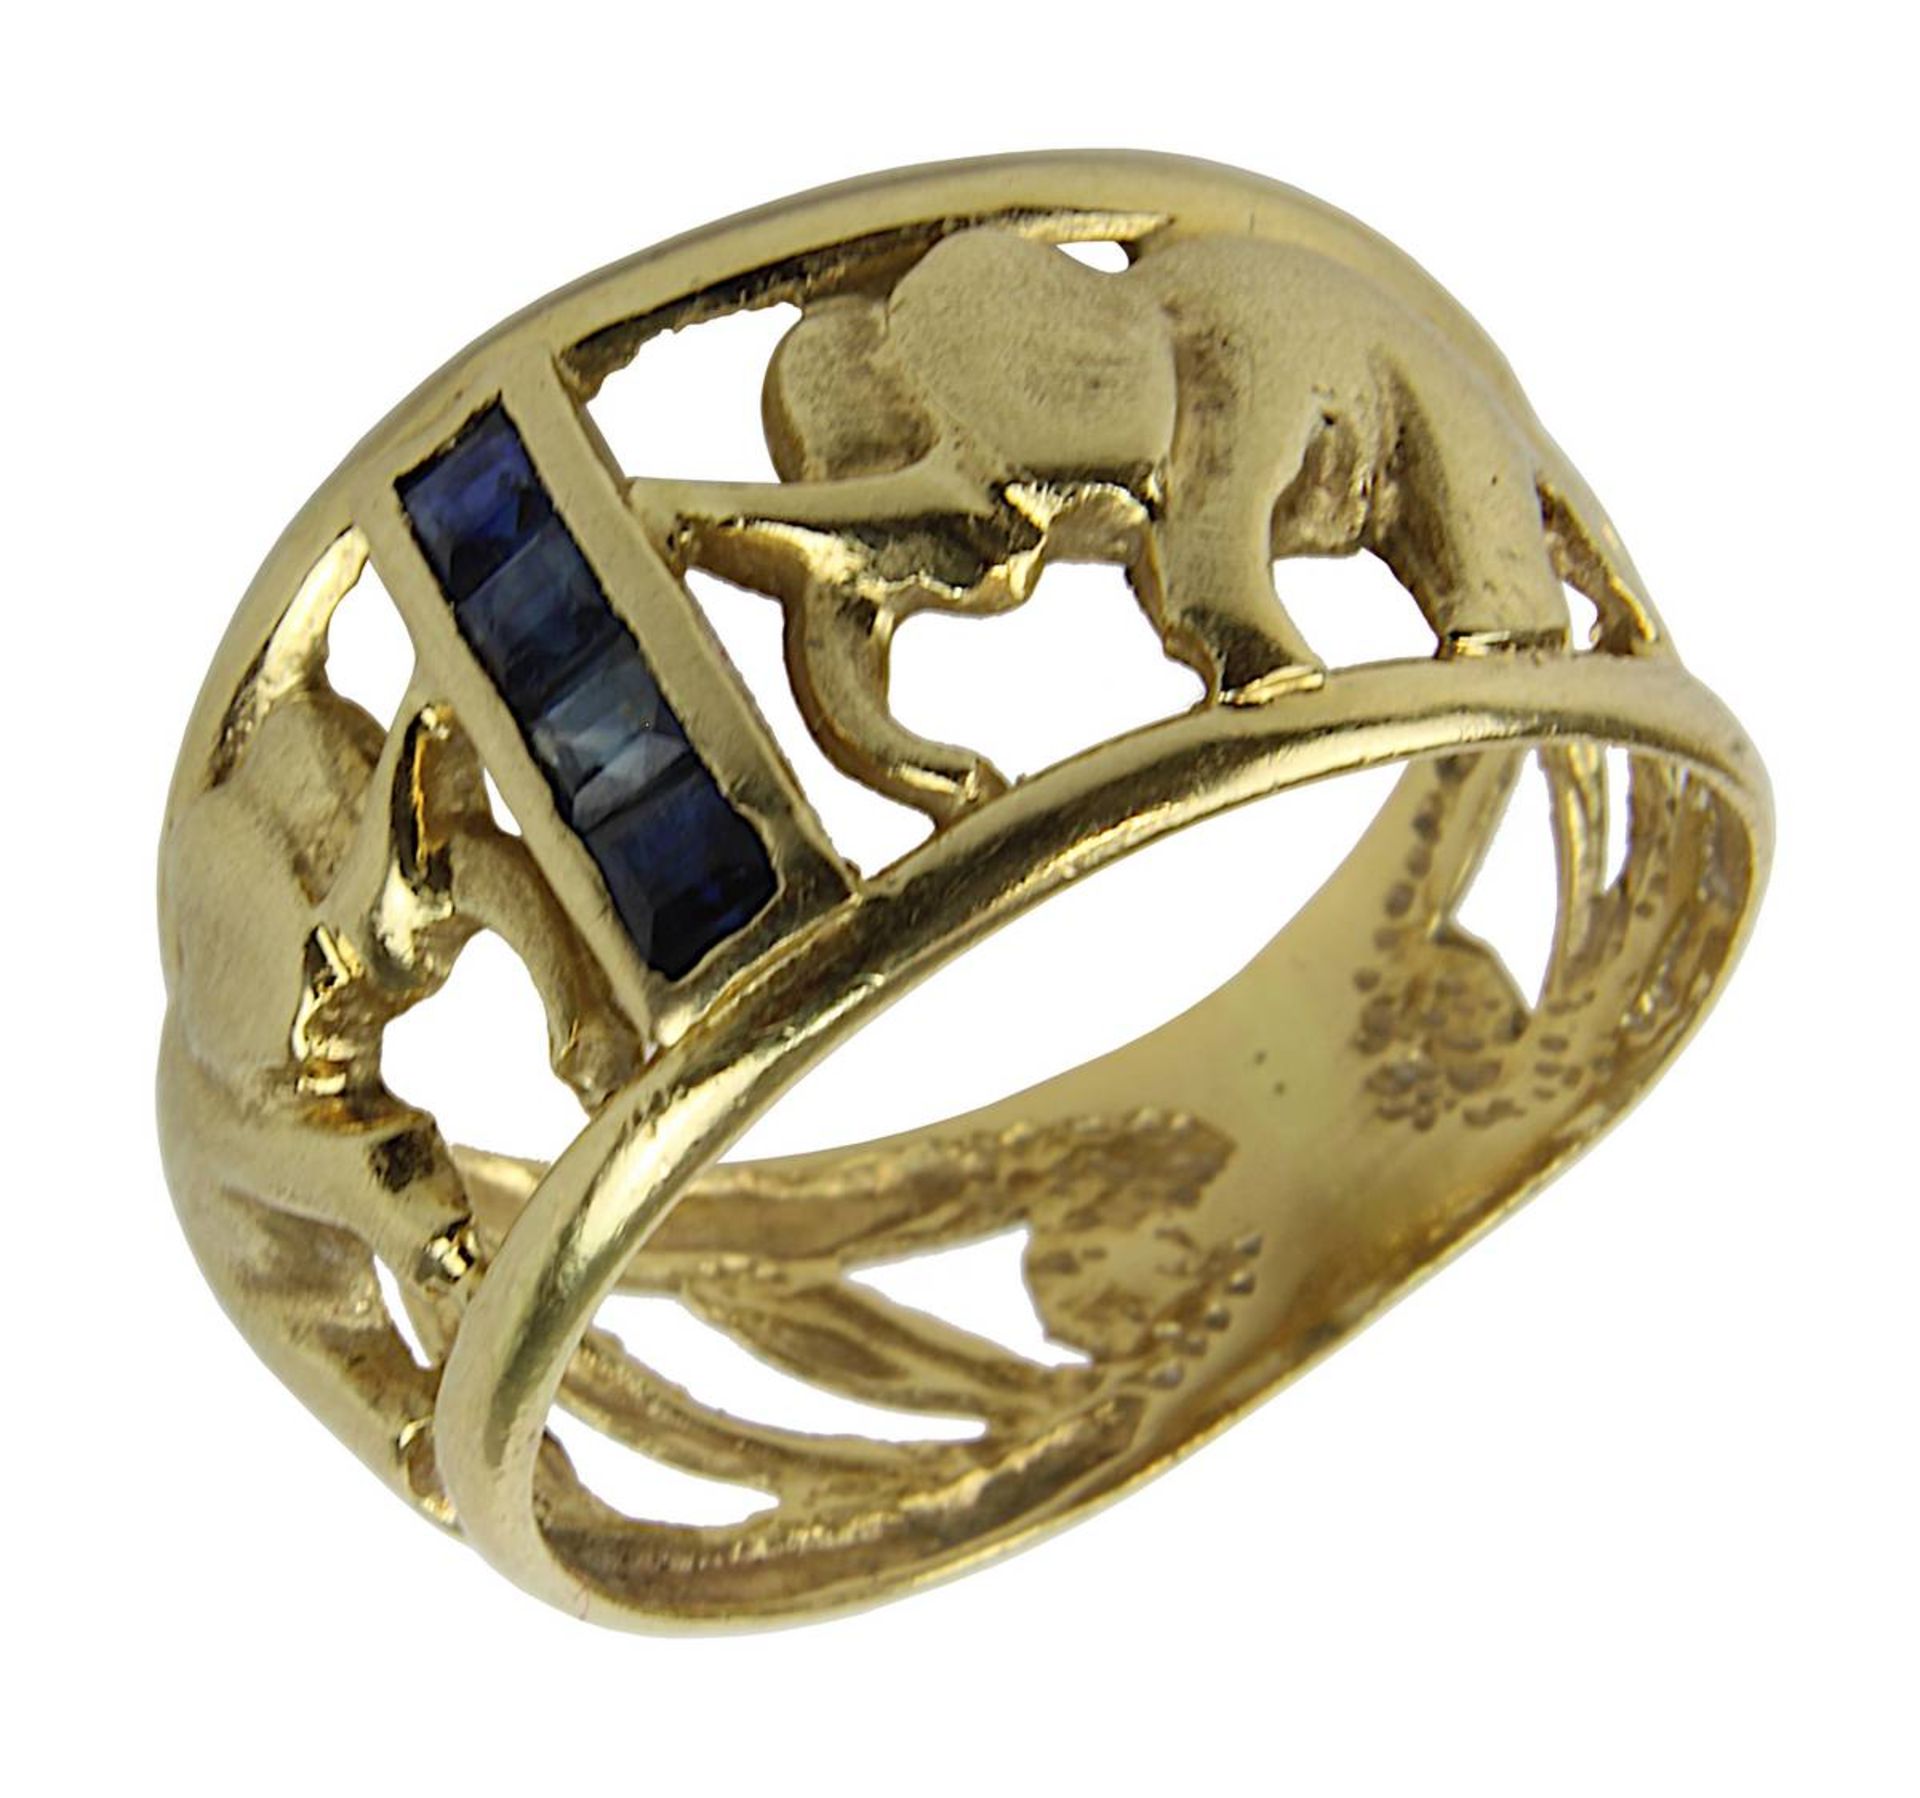 Gelbgold-Damenring mit Elefantendekor und Saphiren, auf Ringschiene gestempelt 750, Ringkopf besetzt